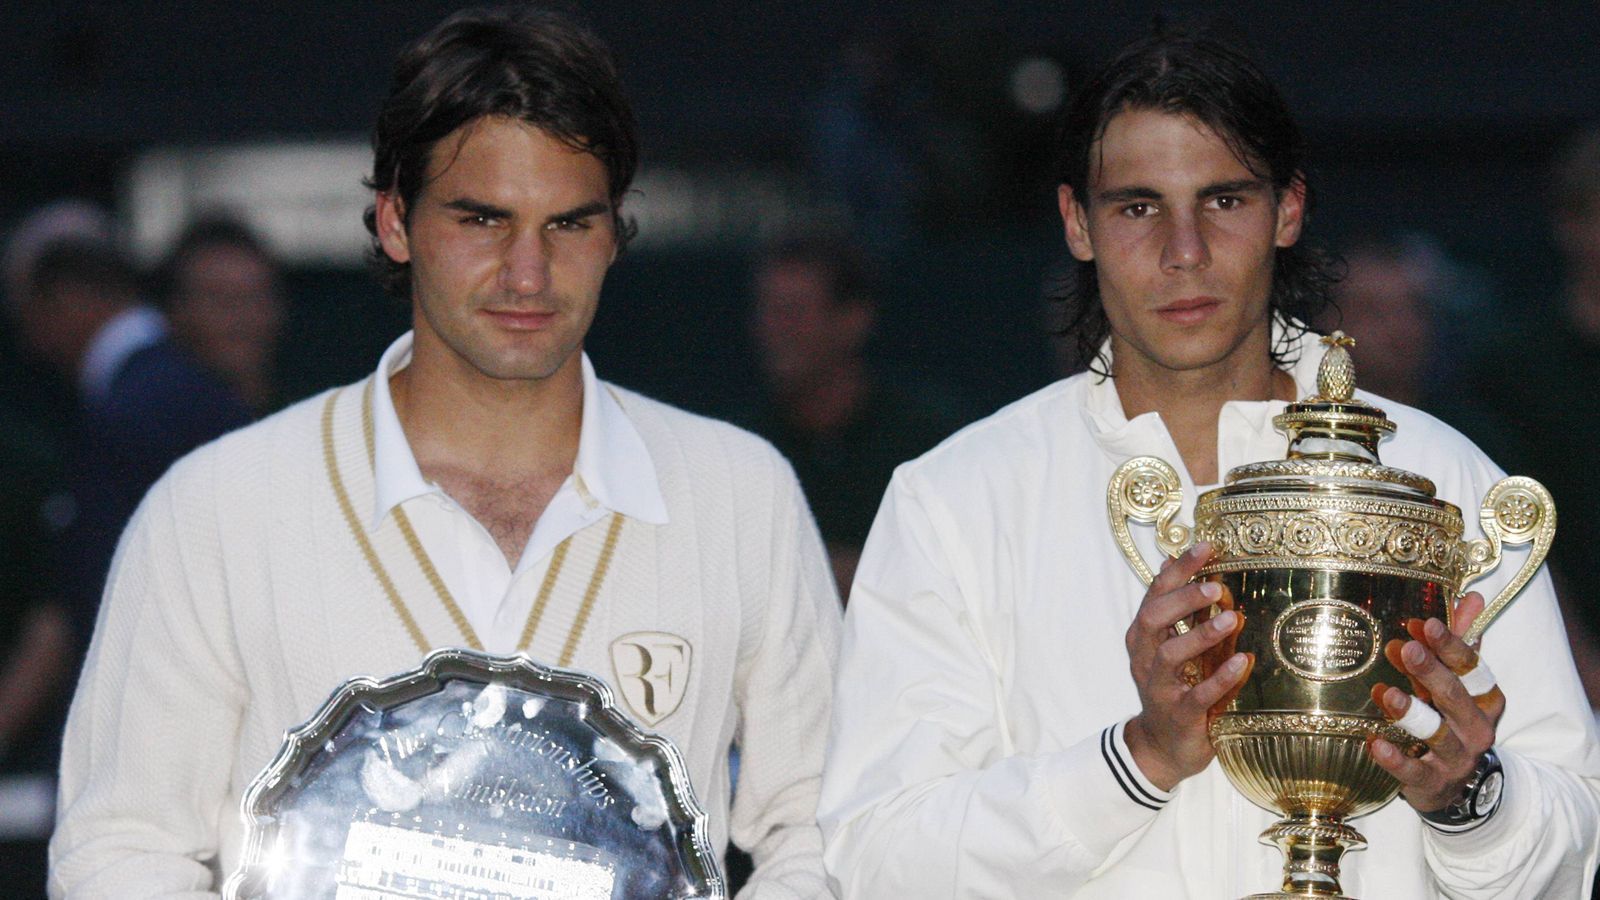 
                <strong>Die ewigen Legenden</strong><br>
                Ja, es ist unglaublich, weil dieses Duell offenbar niemals altert. Aber schon damals geht es rund, wenn beide Tennis-Legenden auf dem Platz stehen. Rafael Nadal besiegt Roger Federer im Wimbledon-Finale nach fast fünf Stunden mit 6:4, 6:4, 6:7, 6:7, 9:7.
              